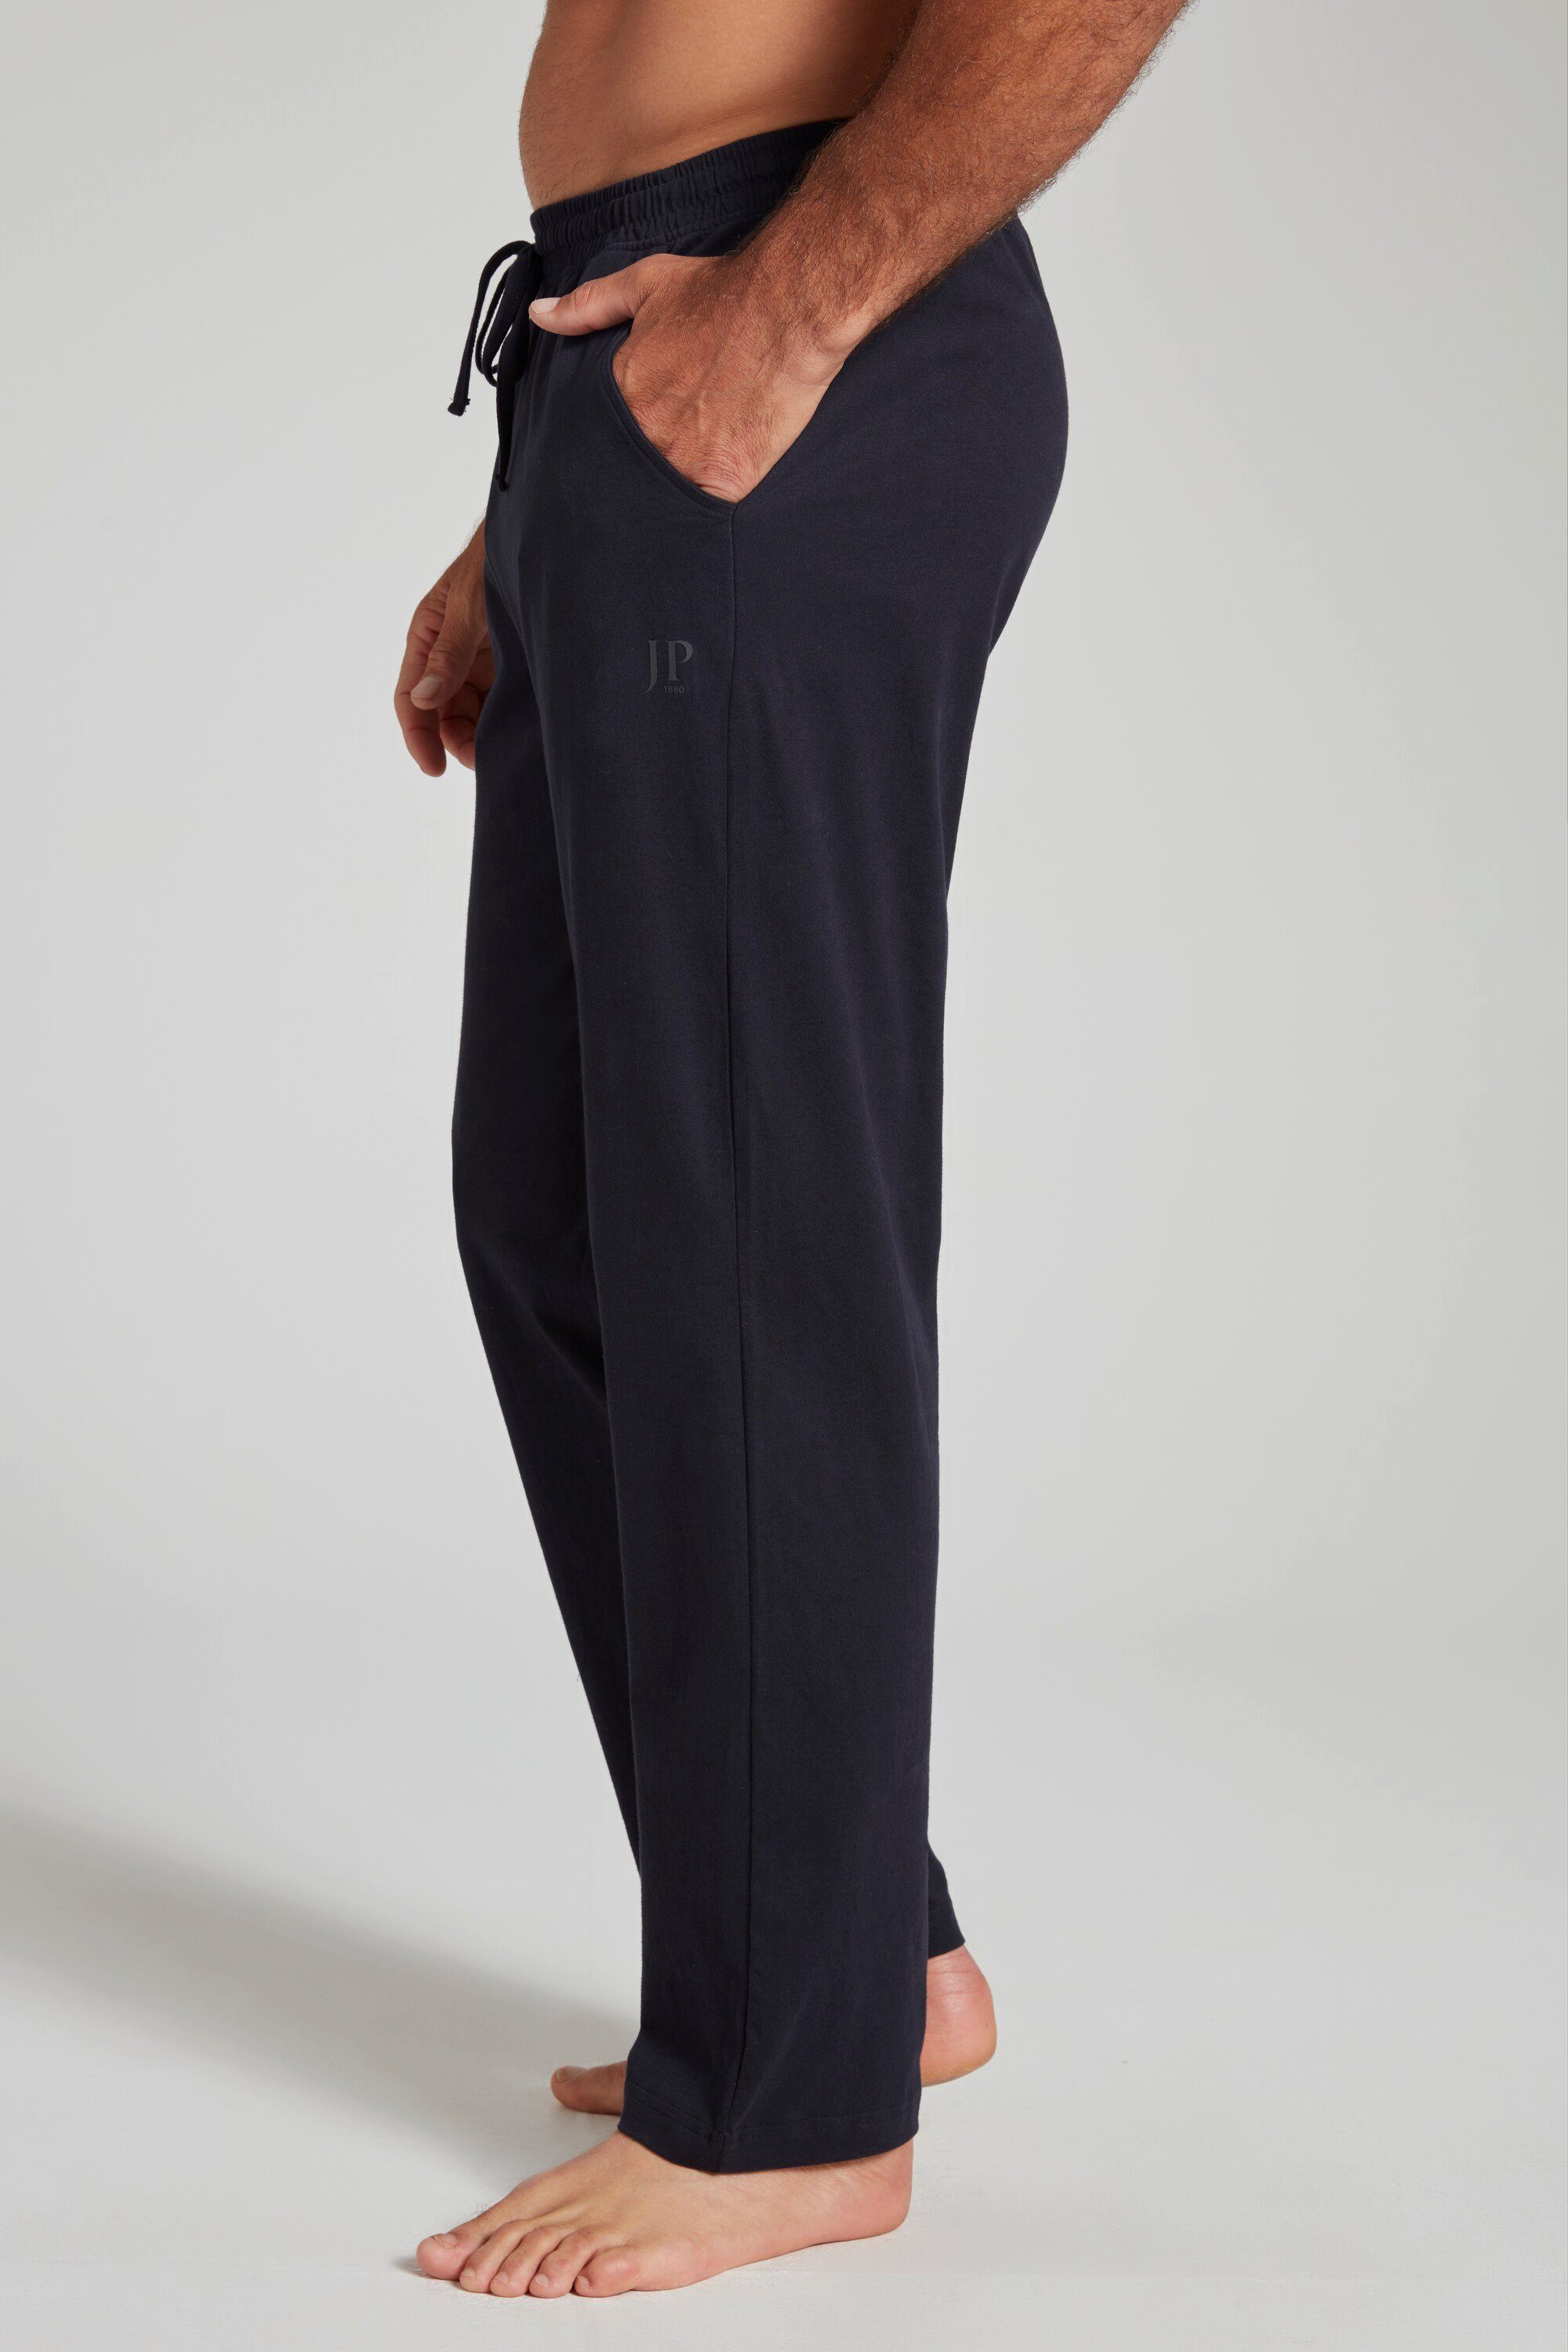 marine dunkel lange Elastikbund Schlafanzug Schlafanzug-Hose Homewear Form JP1880